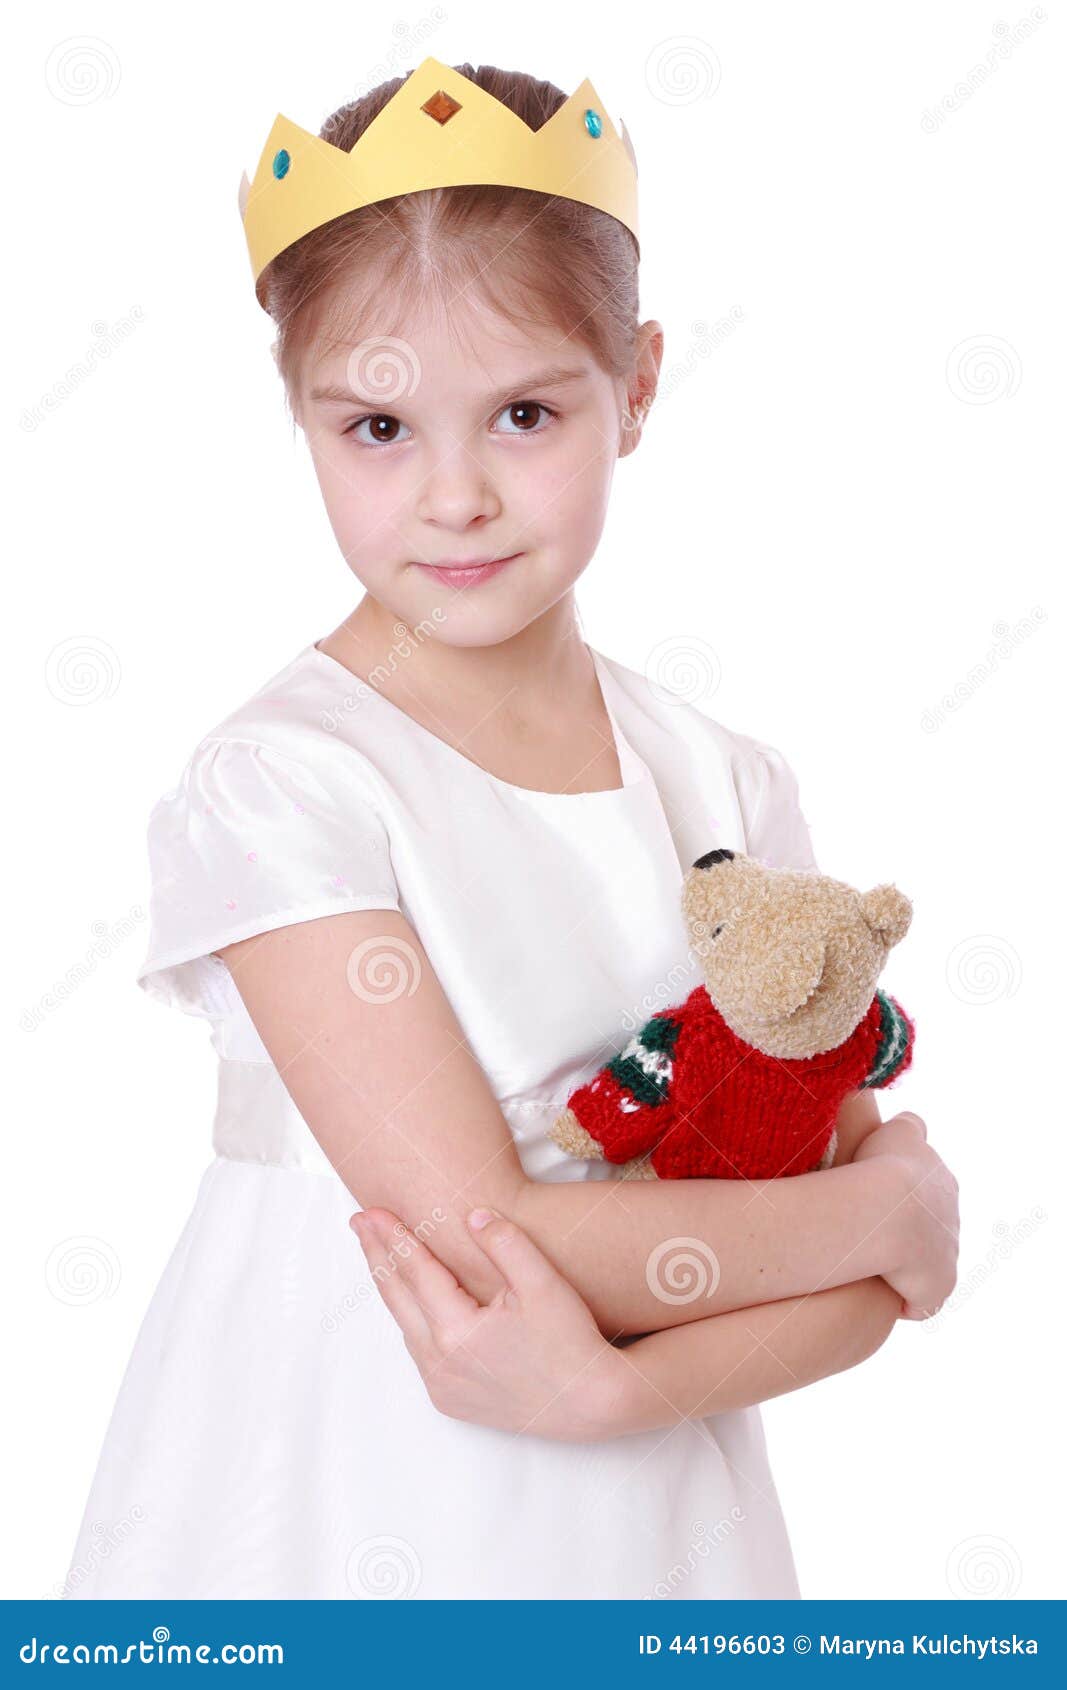 kid holding teddy bear